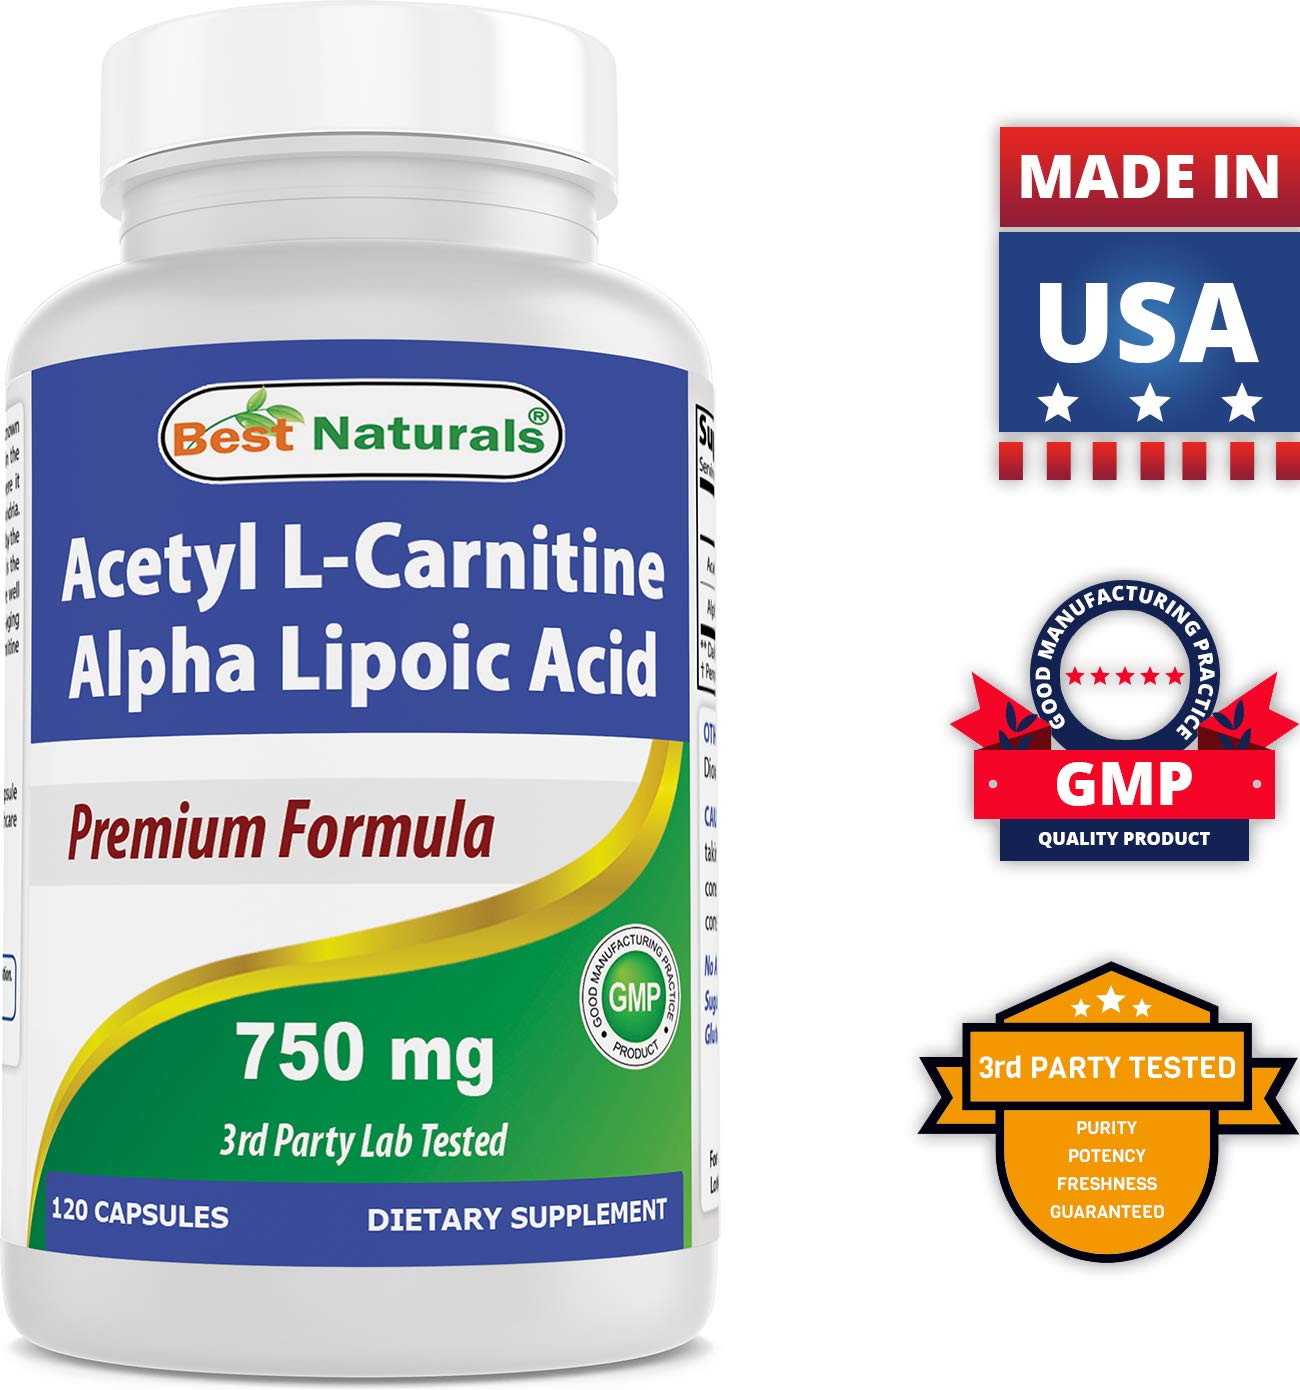 Best Naturals Acetyl L-Carnitine and Alpha Lipoic Acid 750 mg & Vitamin B-12 6000 mcg